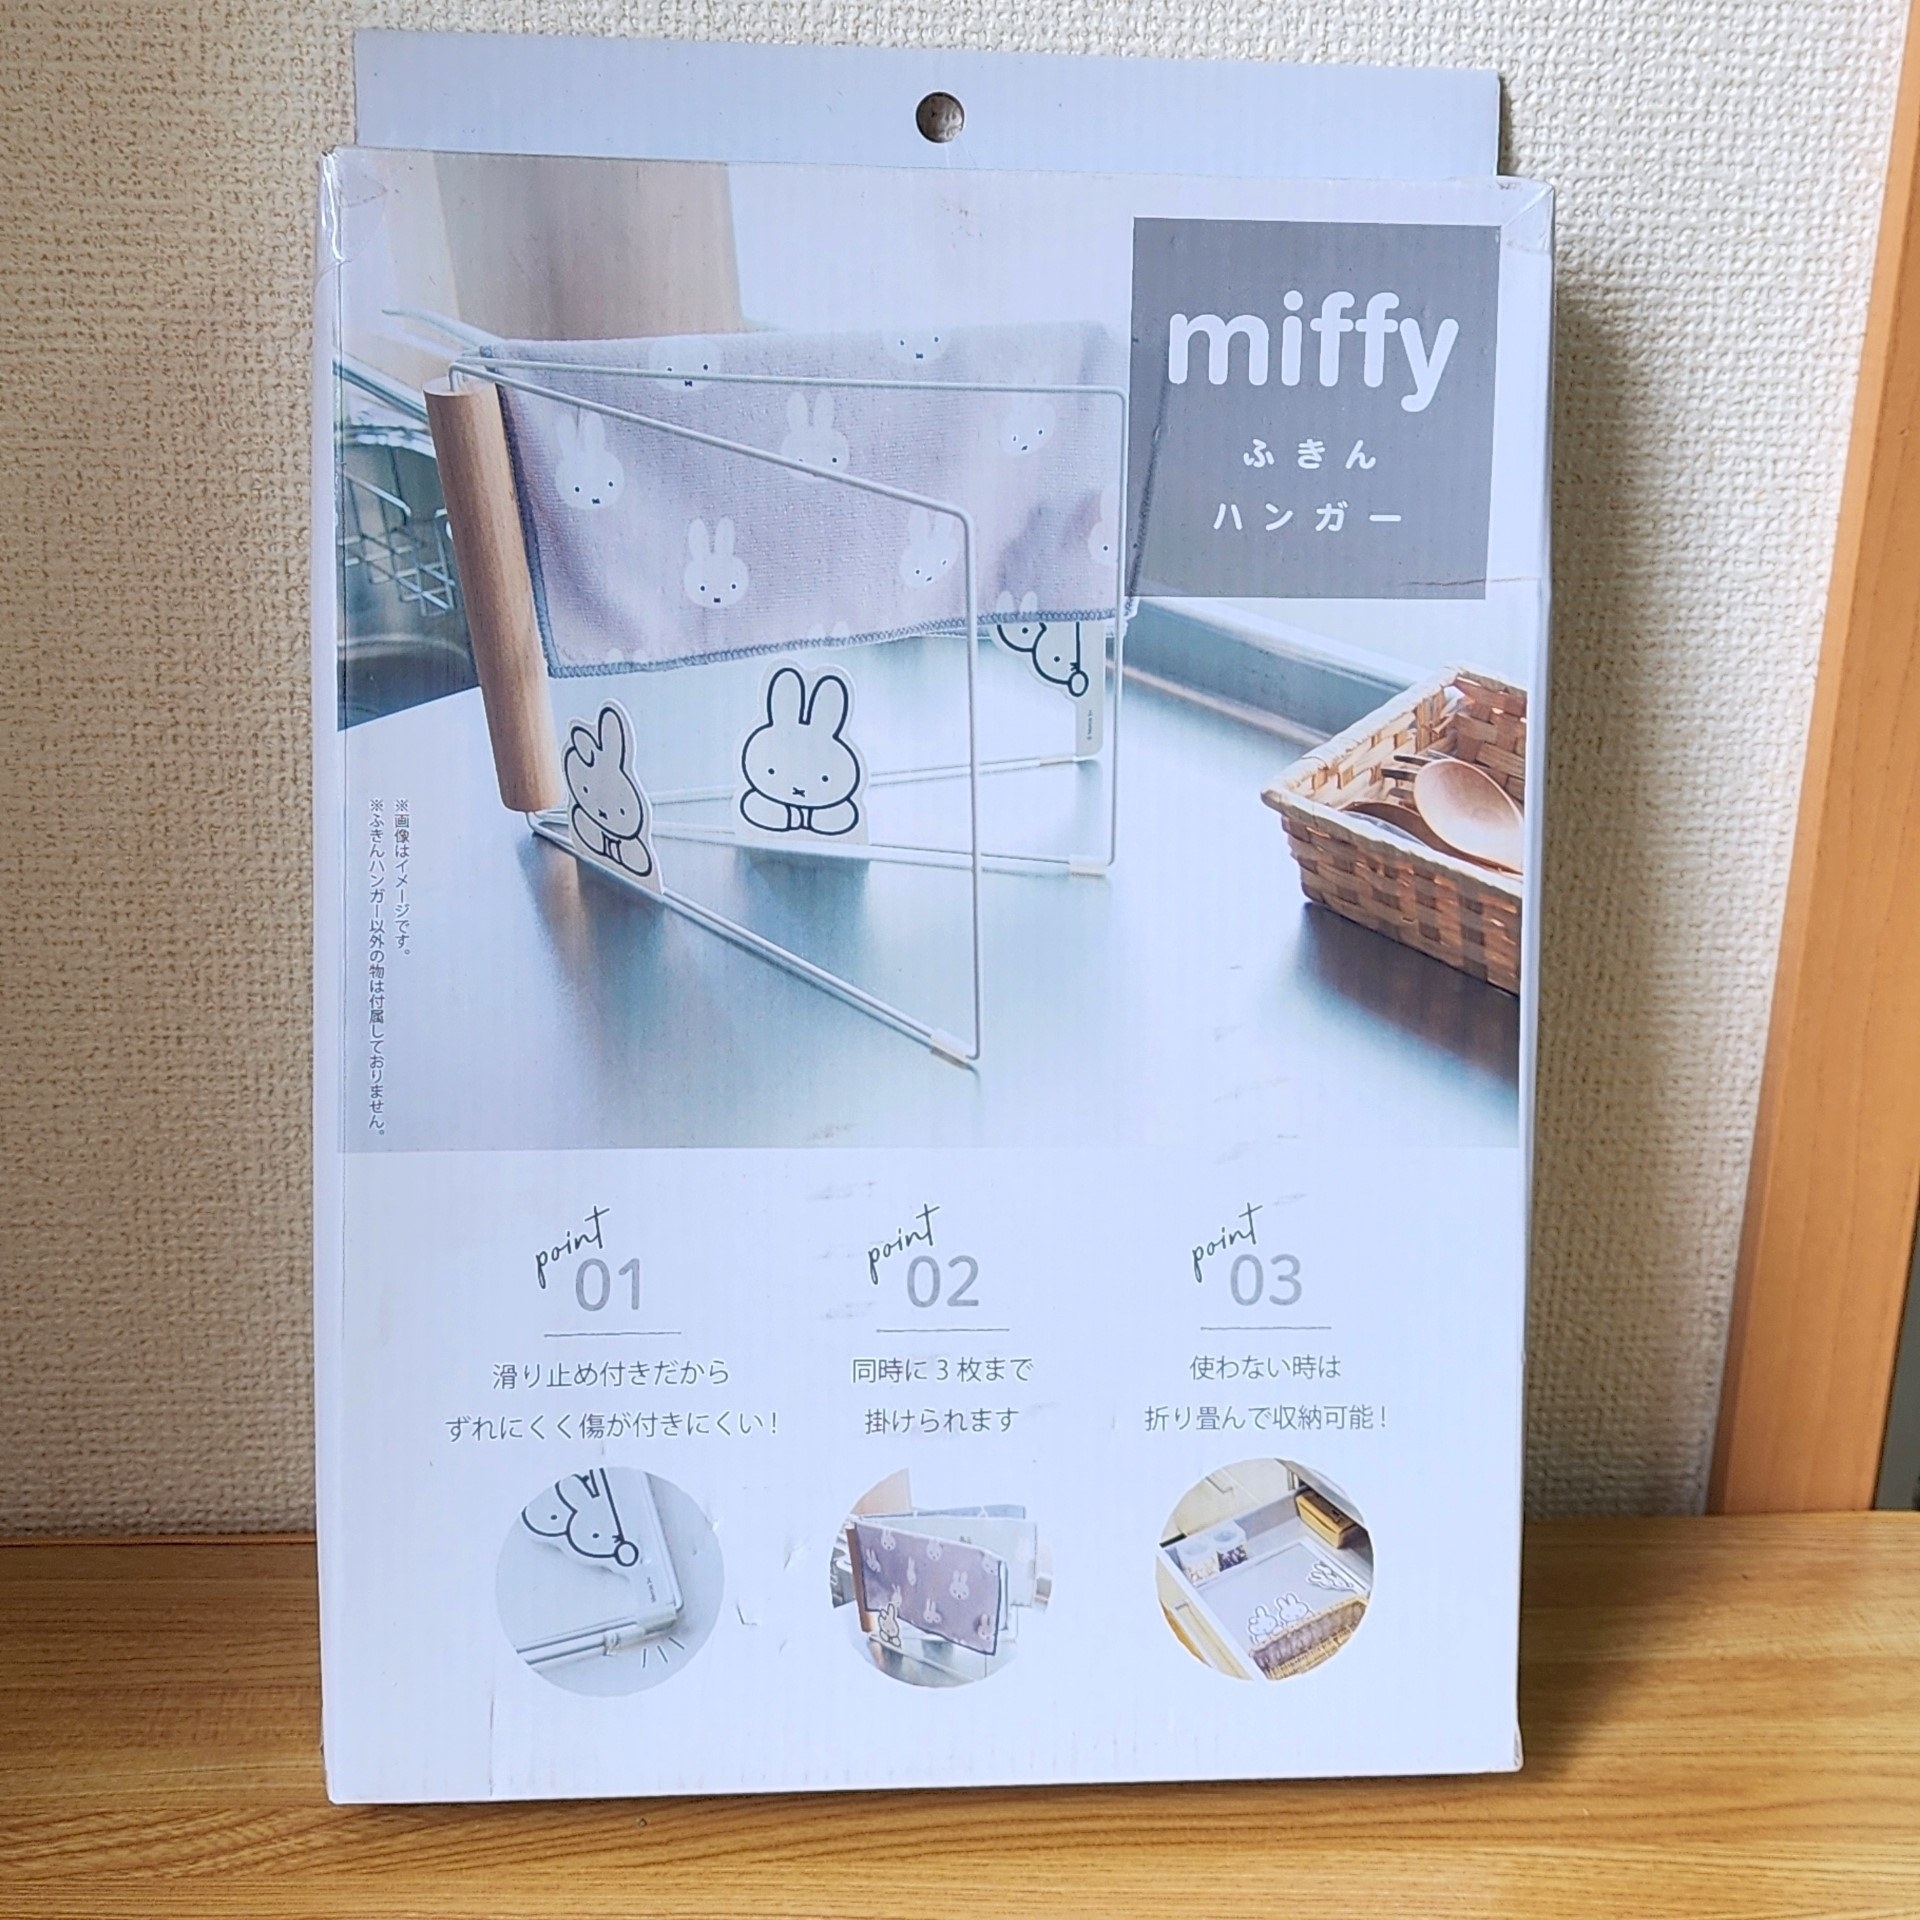 NITORI（ニトリ）のおすすめ雑貨「miffy ミッフィー 布巾ハンガー」